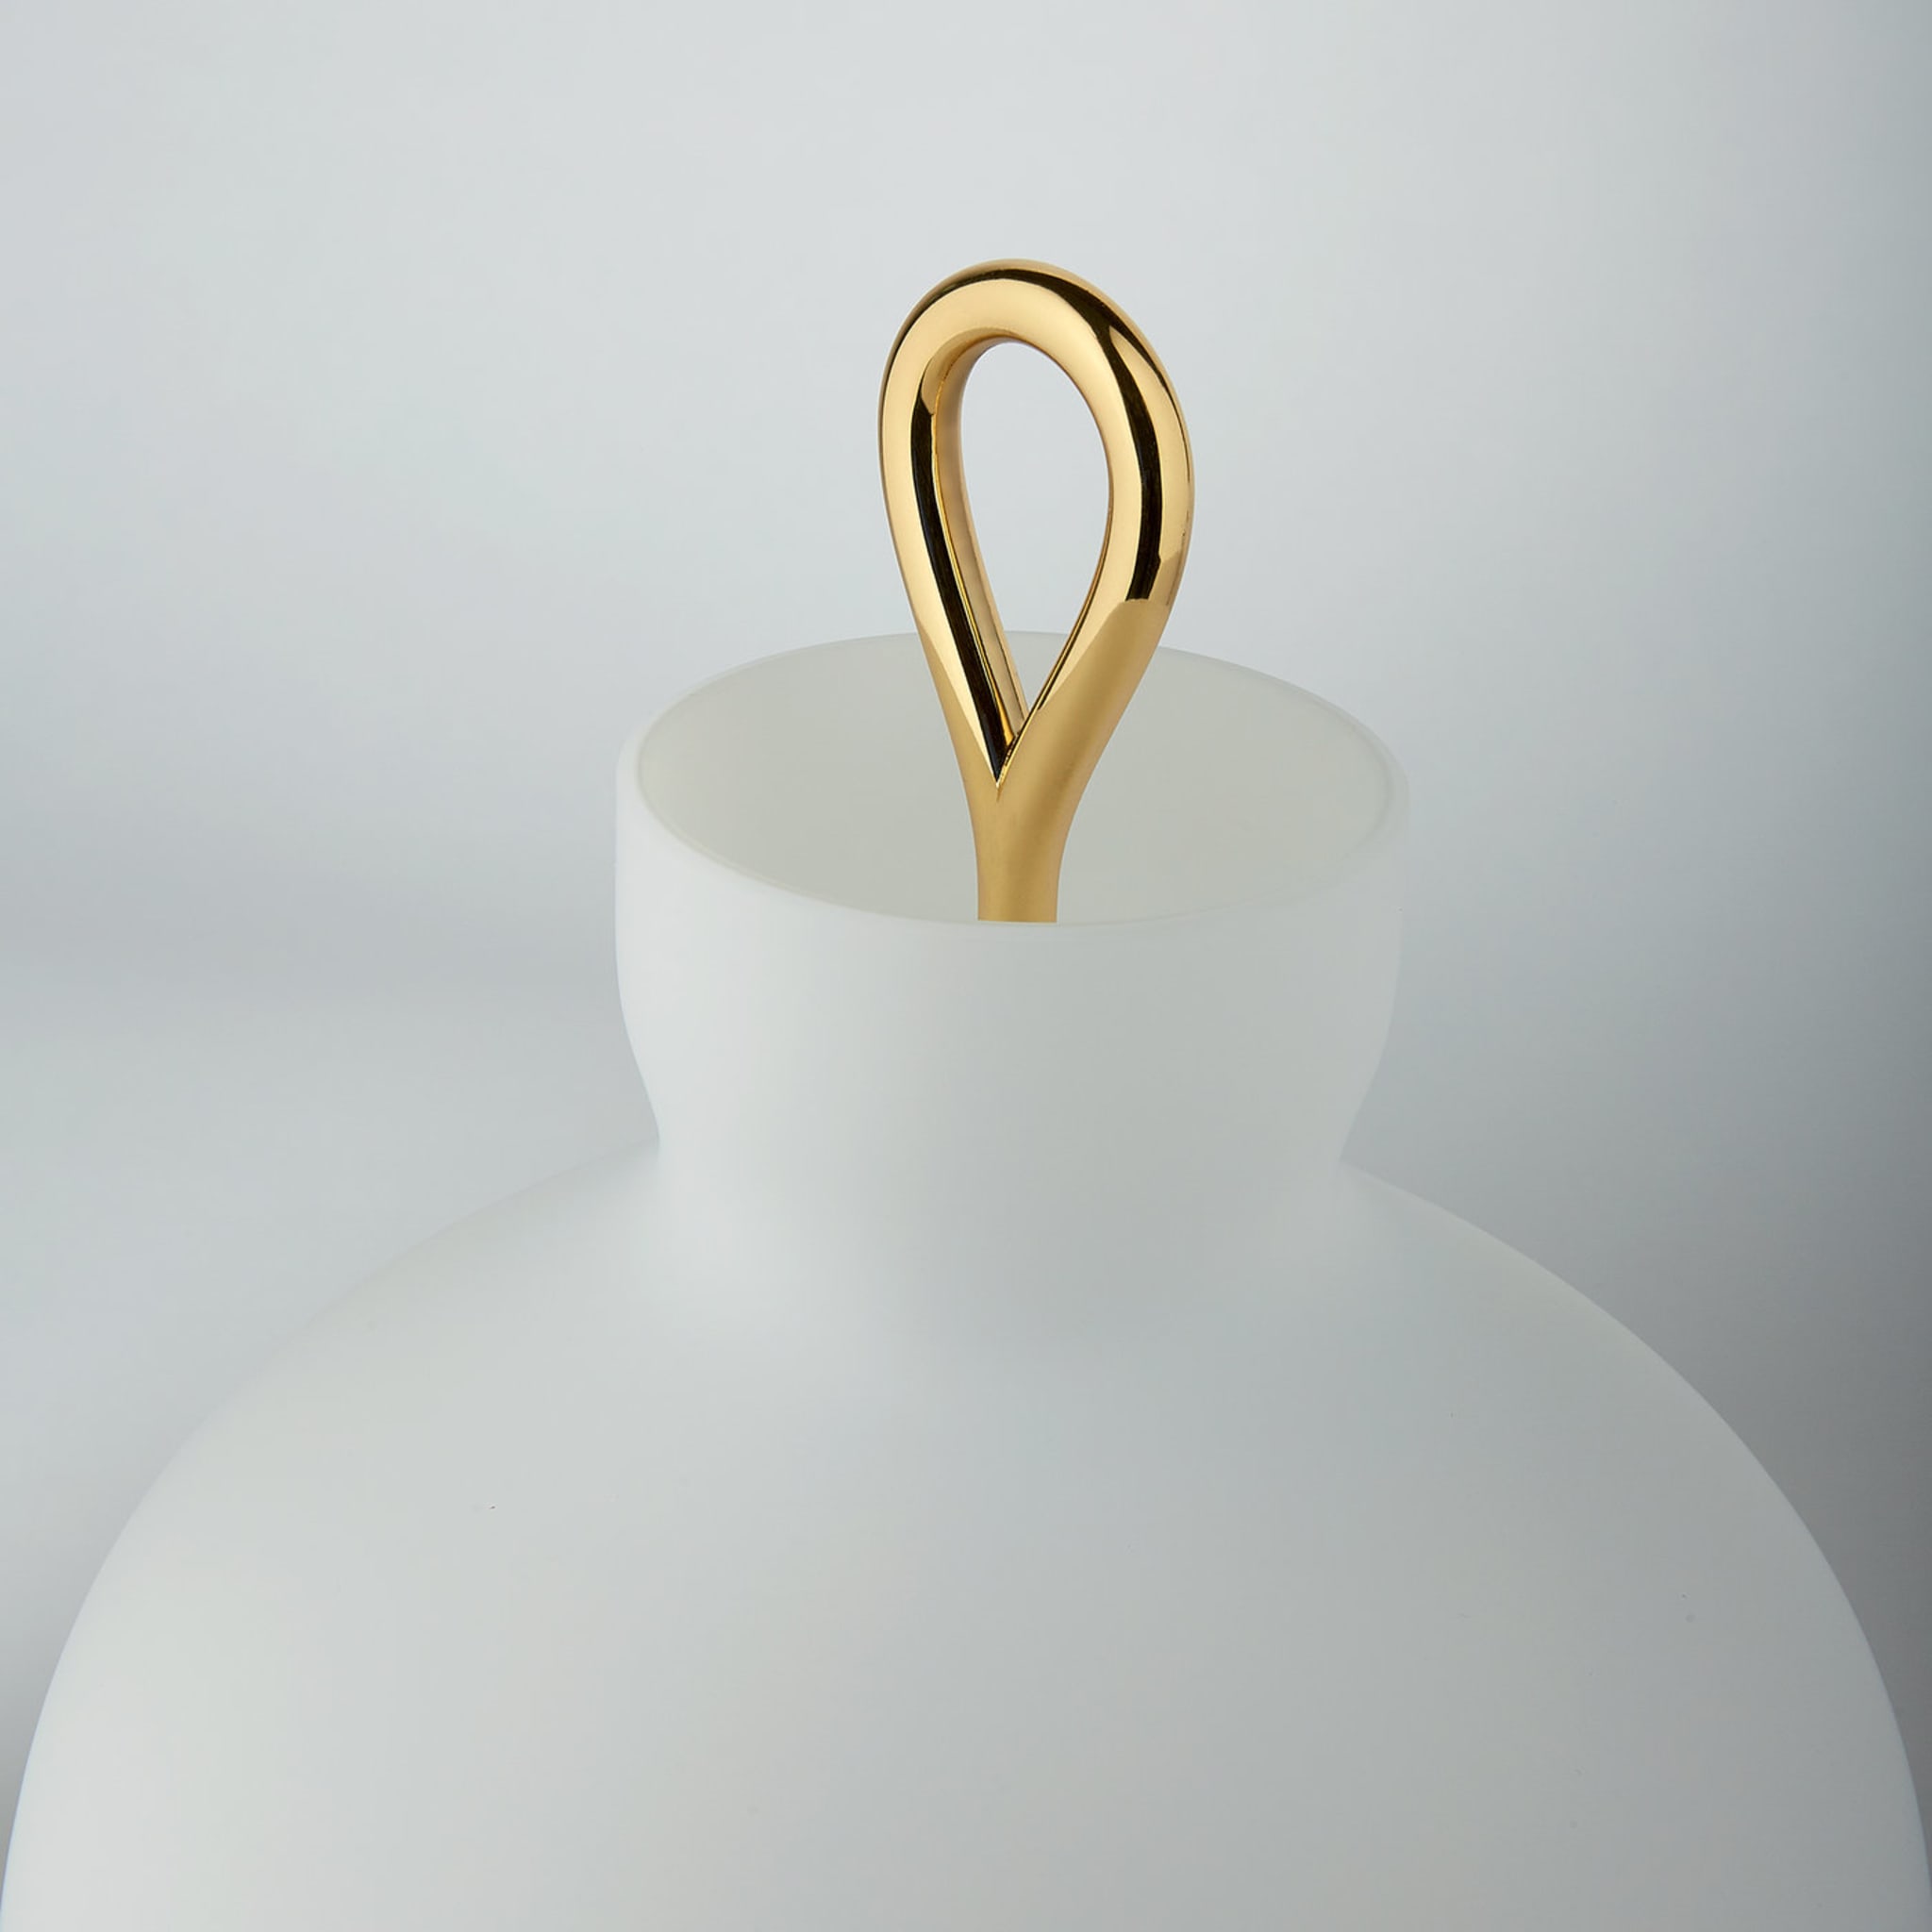 Arenzano Table Lamp by Ignazio Gardella - Alternative view 1